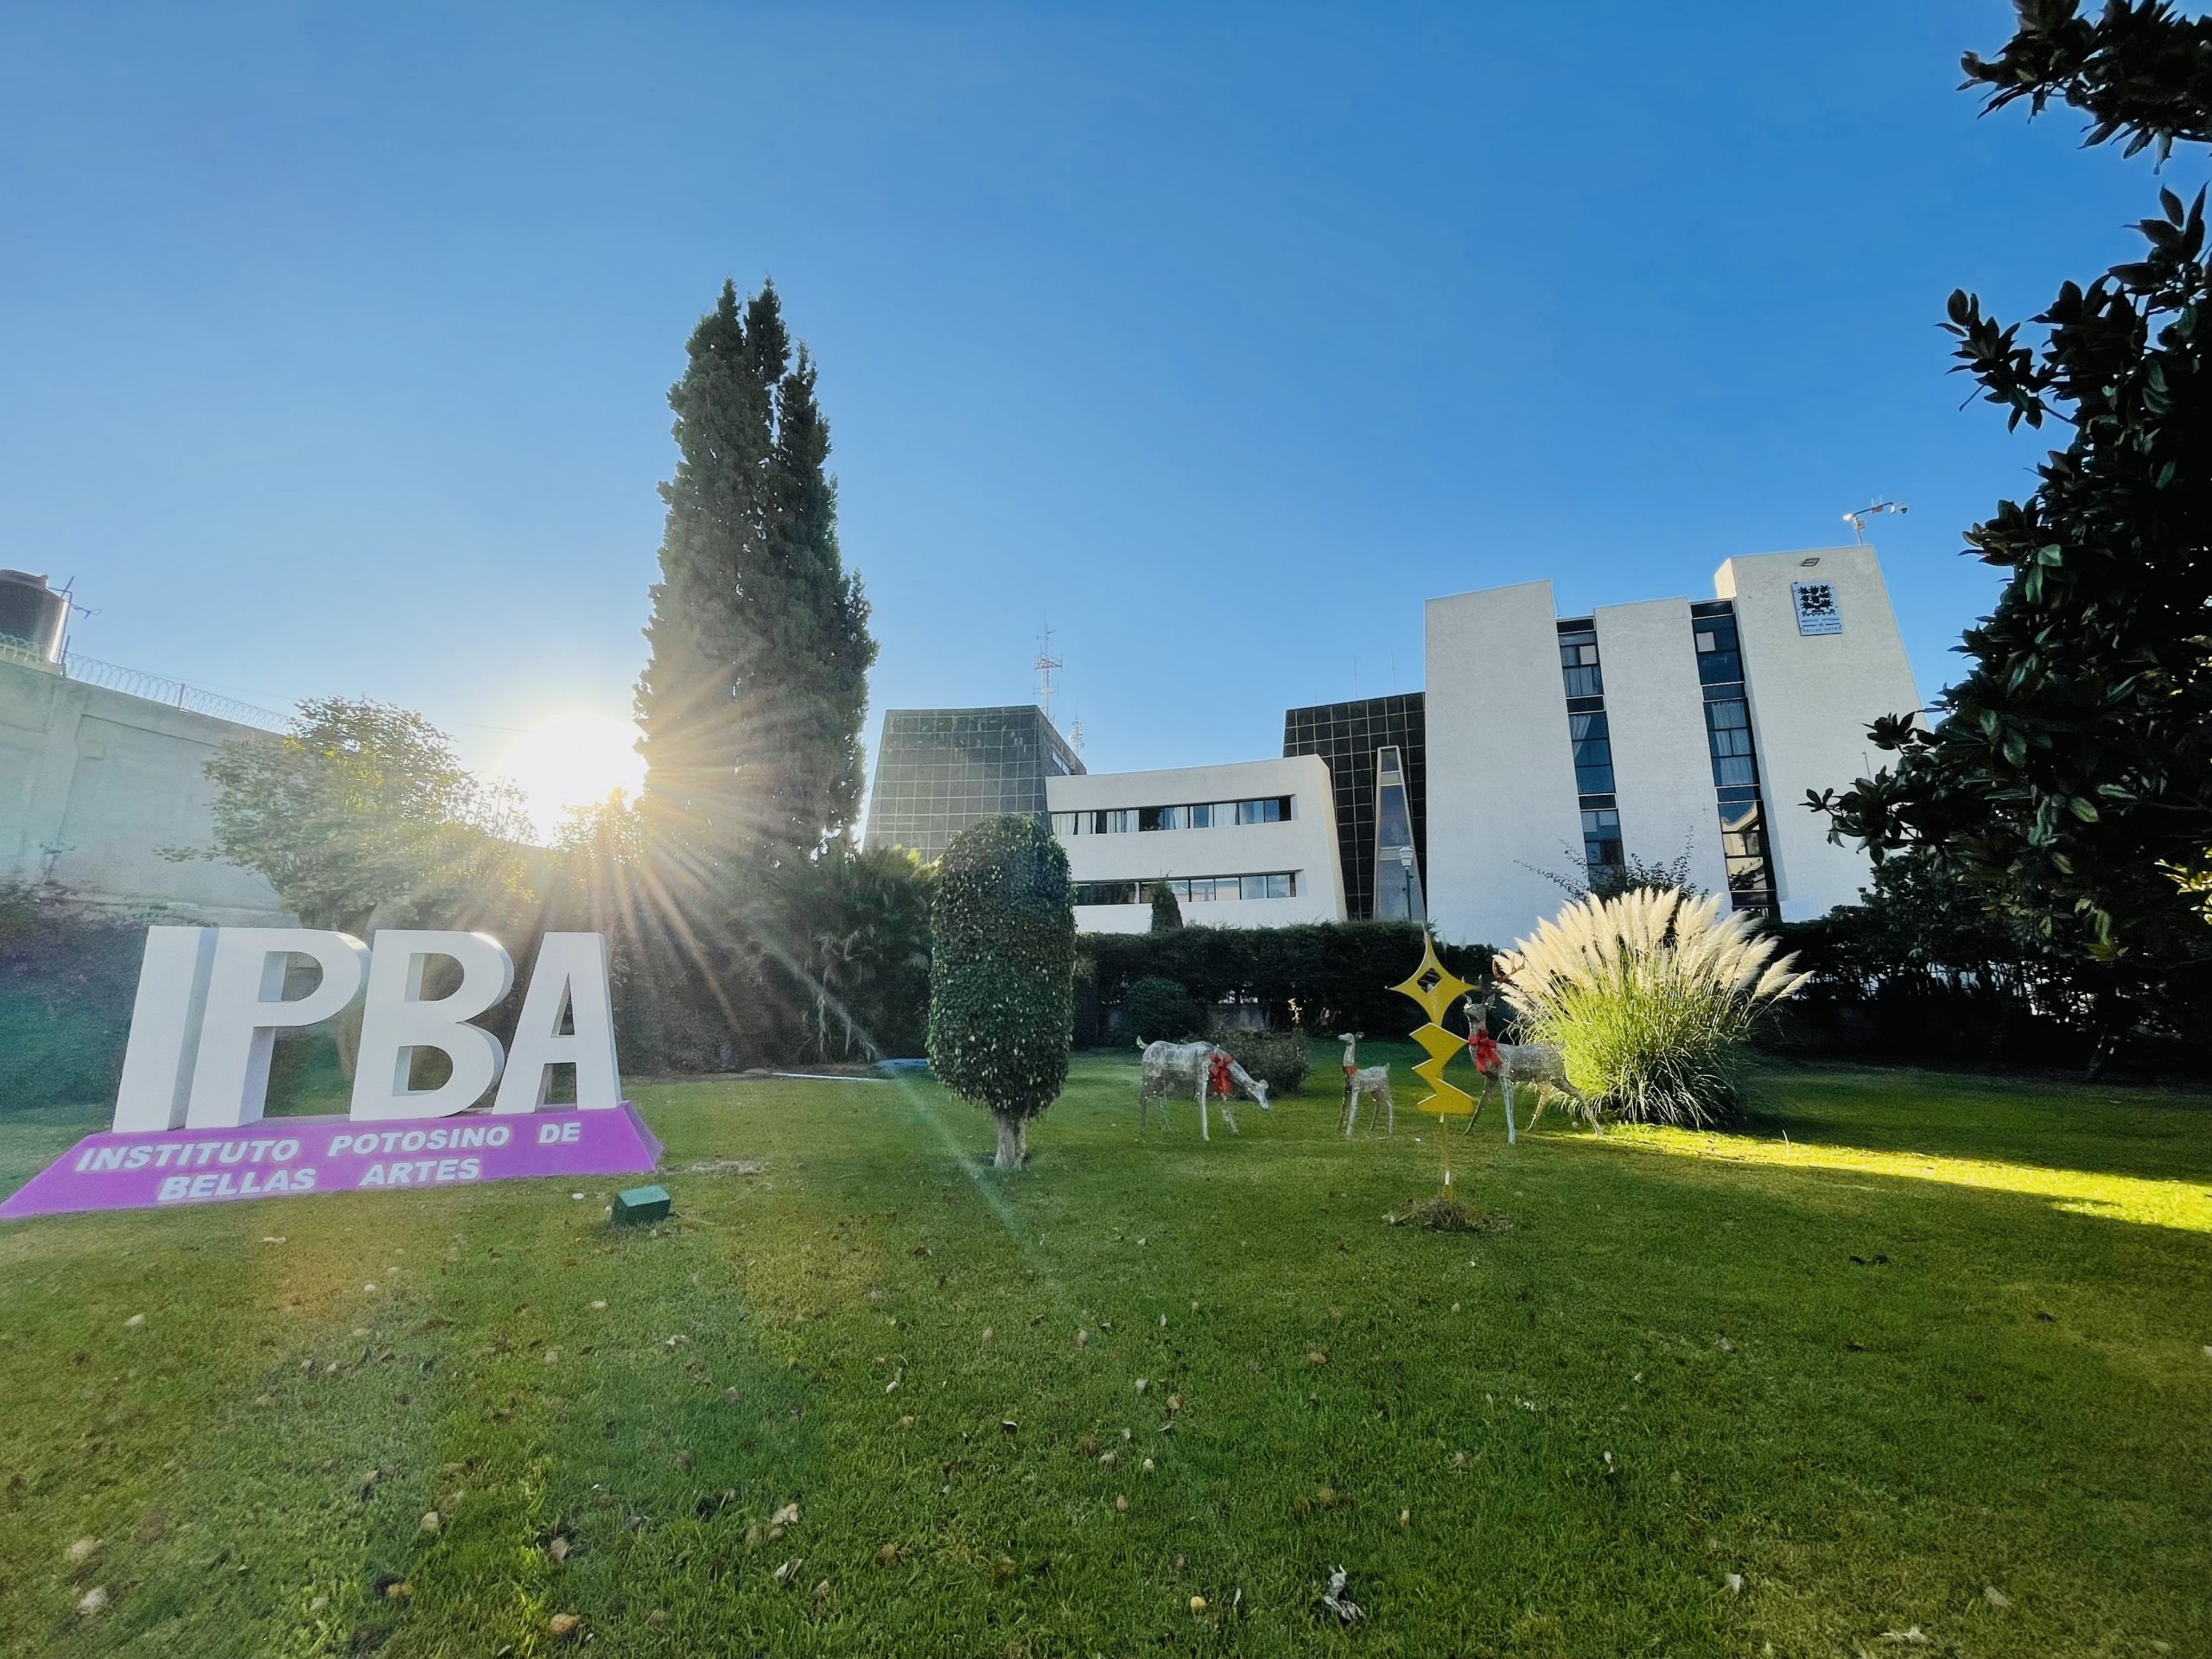 Próximo 17 de enero de 2022 inician los nuevos cursos semestrales del IPBA